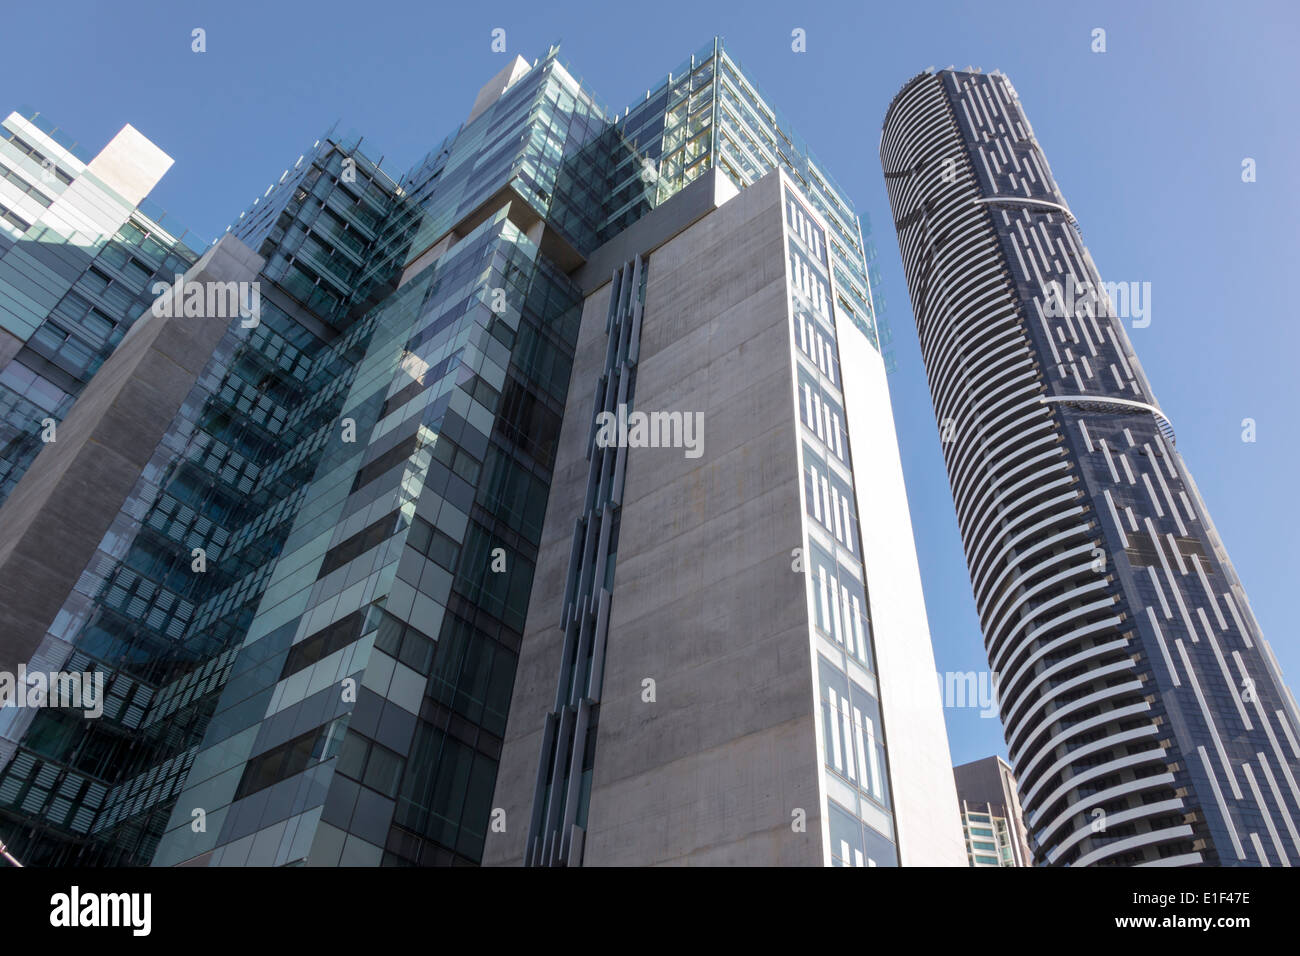 Brisbane Australien, Wolkenkratzer, Meriton Infinity Tower, Eigentumswohnungen Wohnapartments Gebäude Gebäude Gehäuse, Skyline der Stadt, AU140313115 Stockfoto